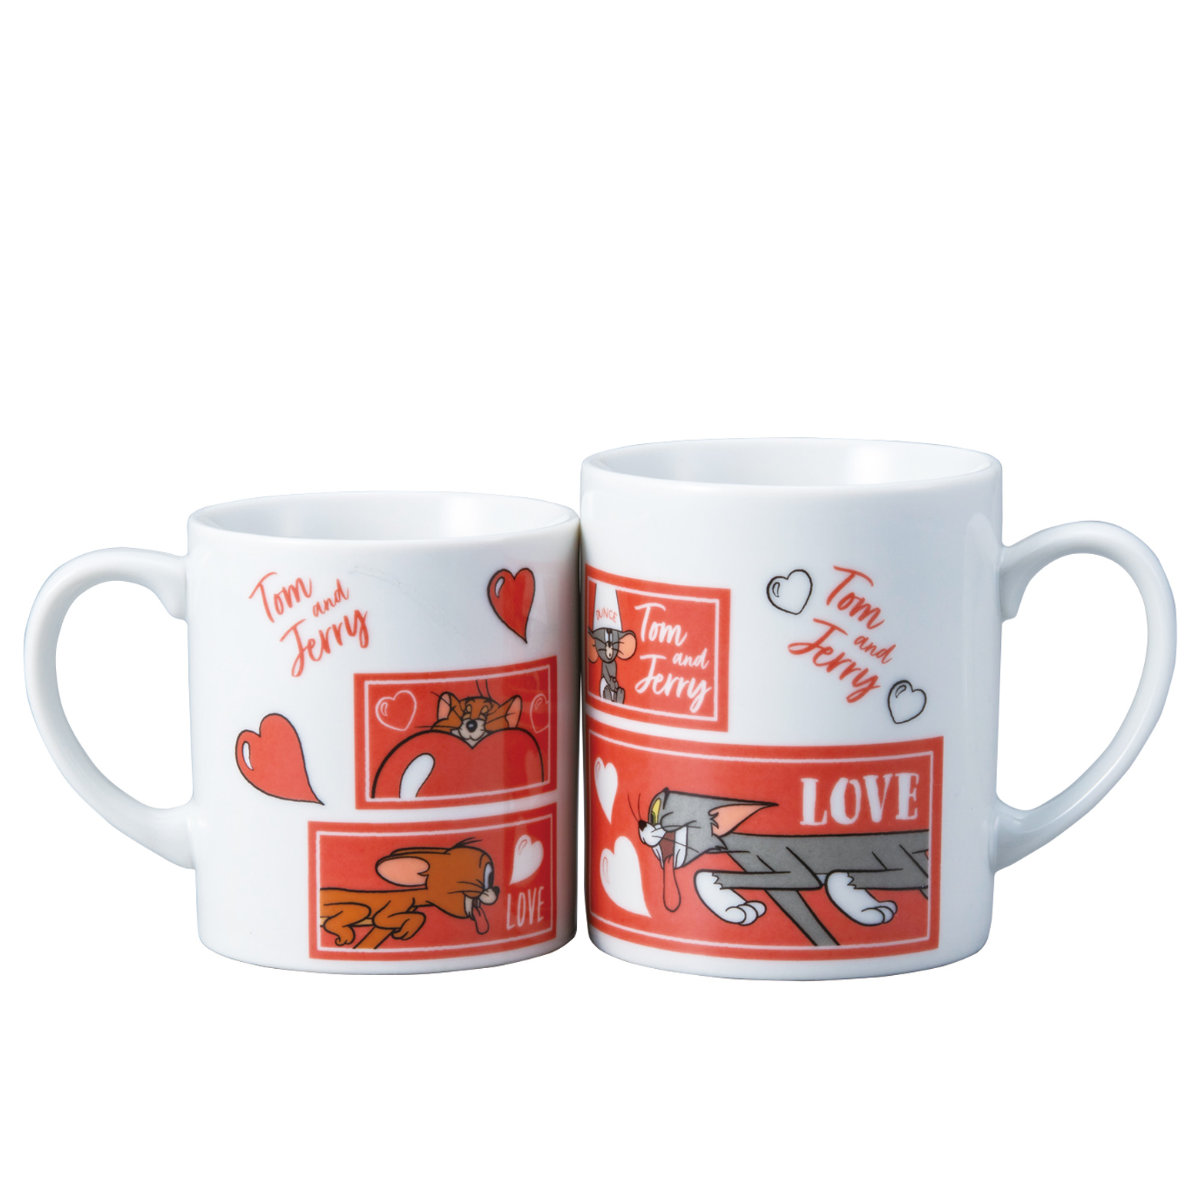 マグカップ ペアマグ トムとジェリー LOVE 磁器 （ ペアマグカップ マグ カップ コップ テーブルウェア キッチン用品 食器 コーヒー 紅茶